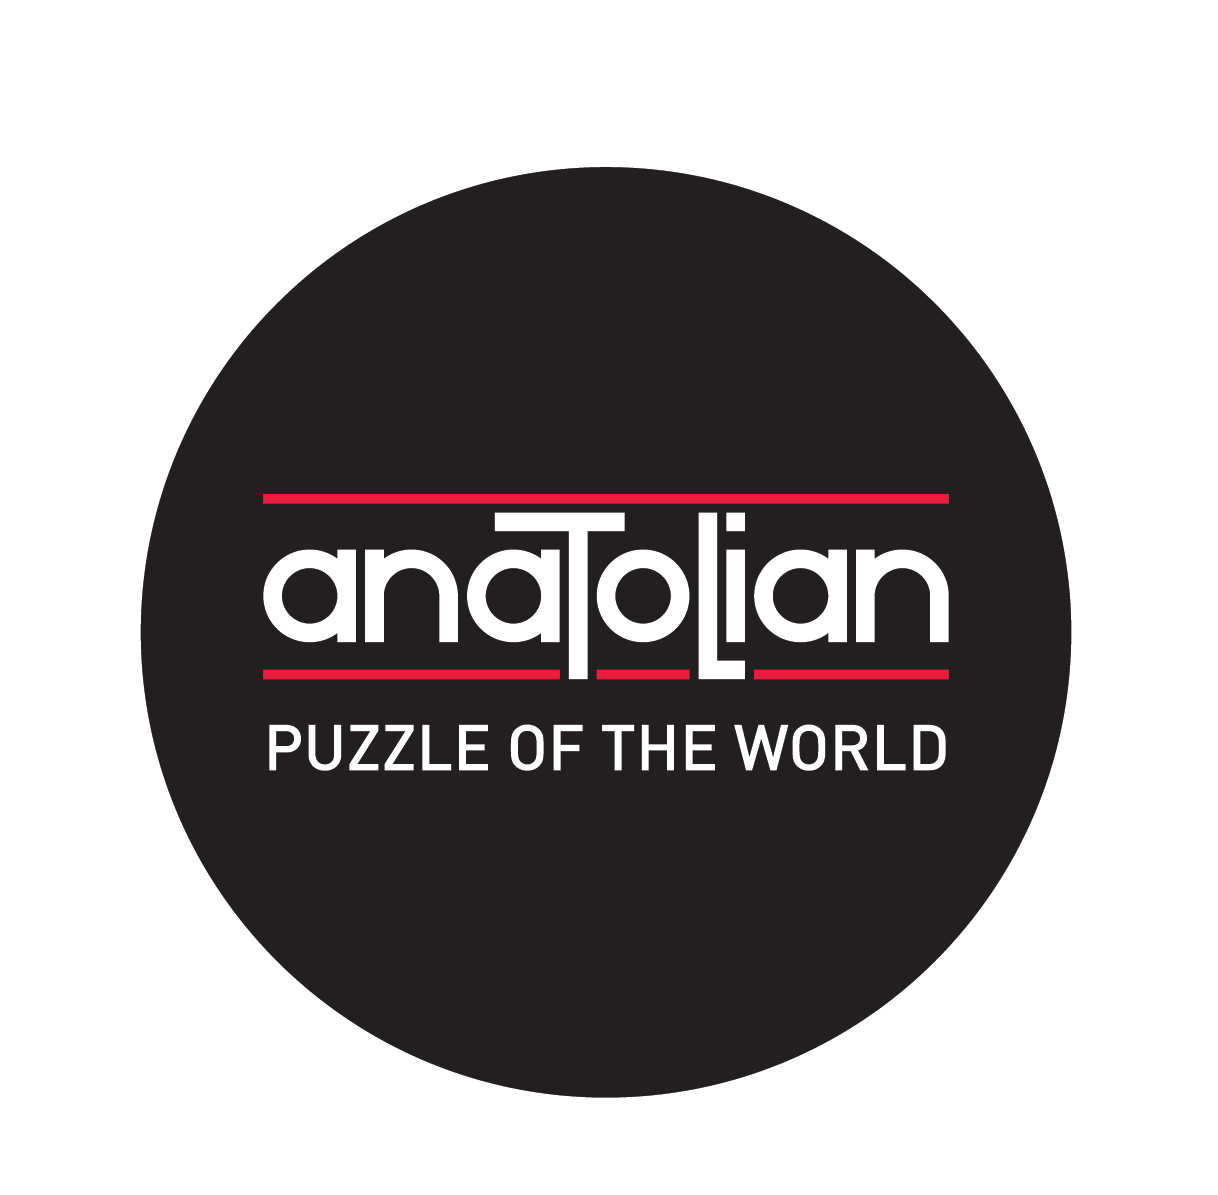 Anatolian